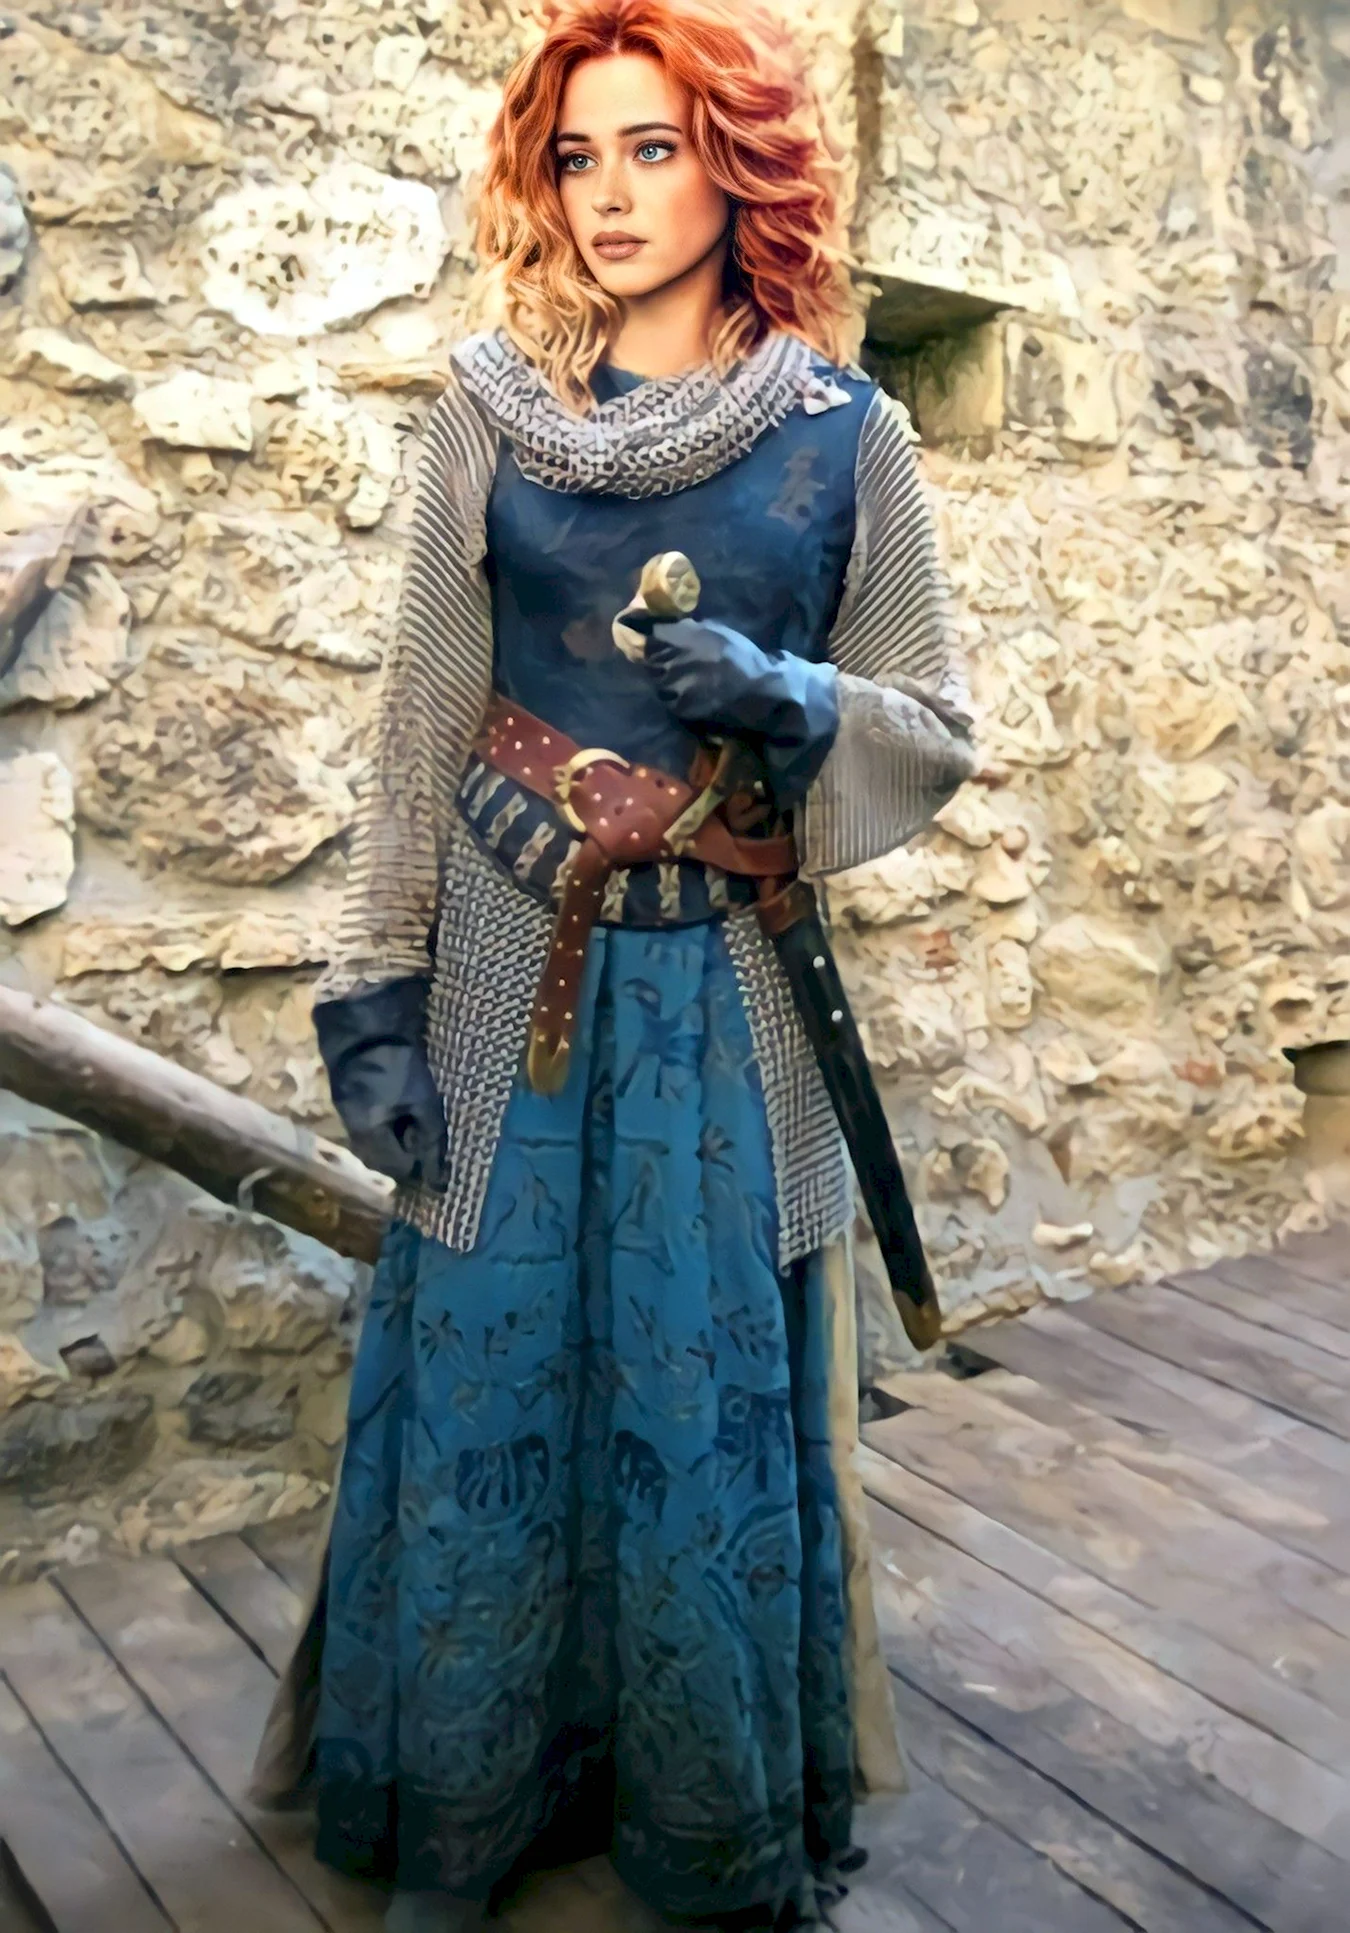 Одежда средневековья